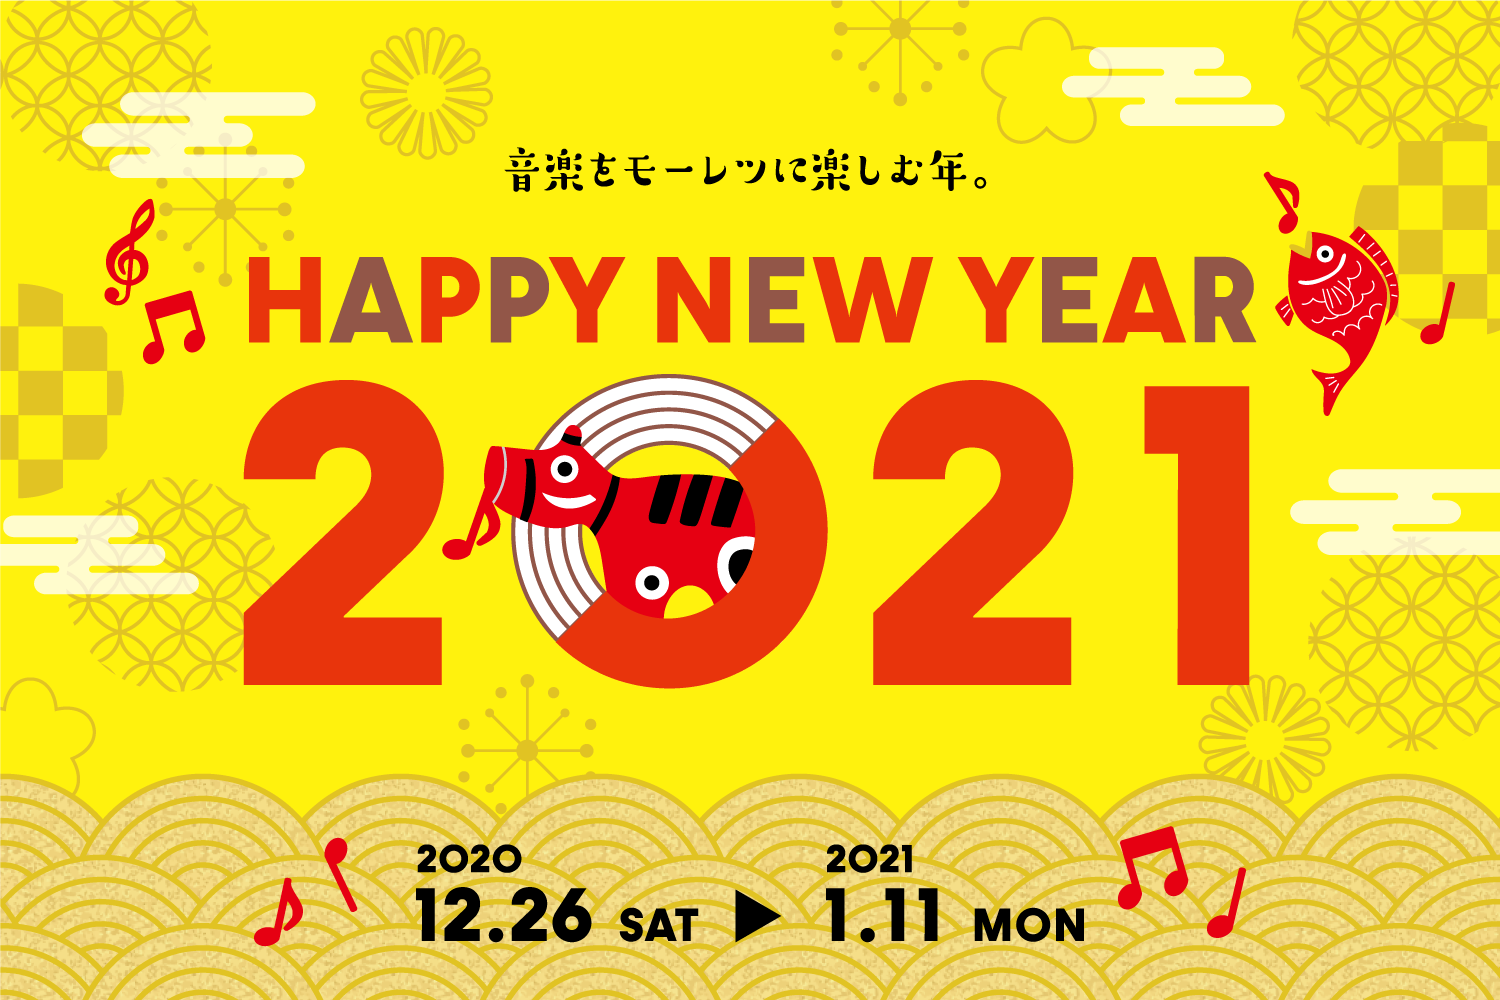 【12/26(土)-1/11(月祝)】HAPPY NEW YEAR 2021フェアまとめ